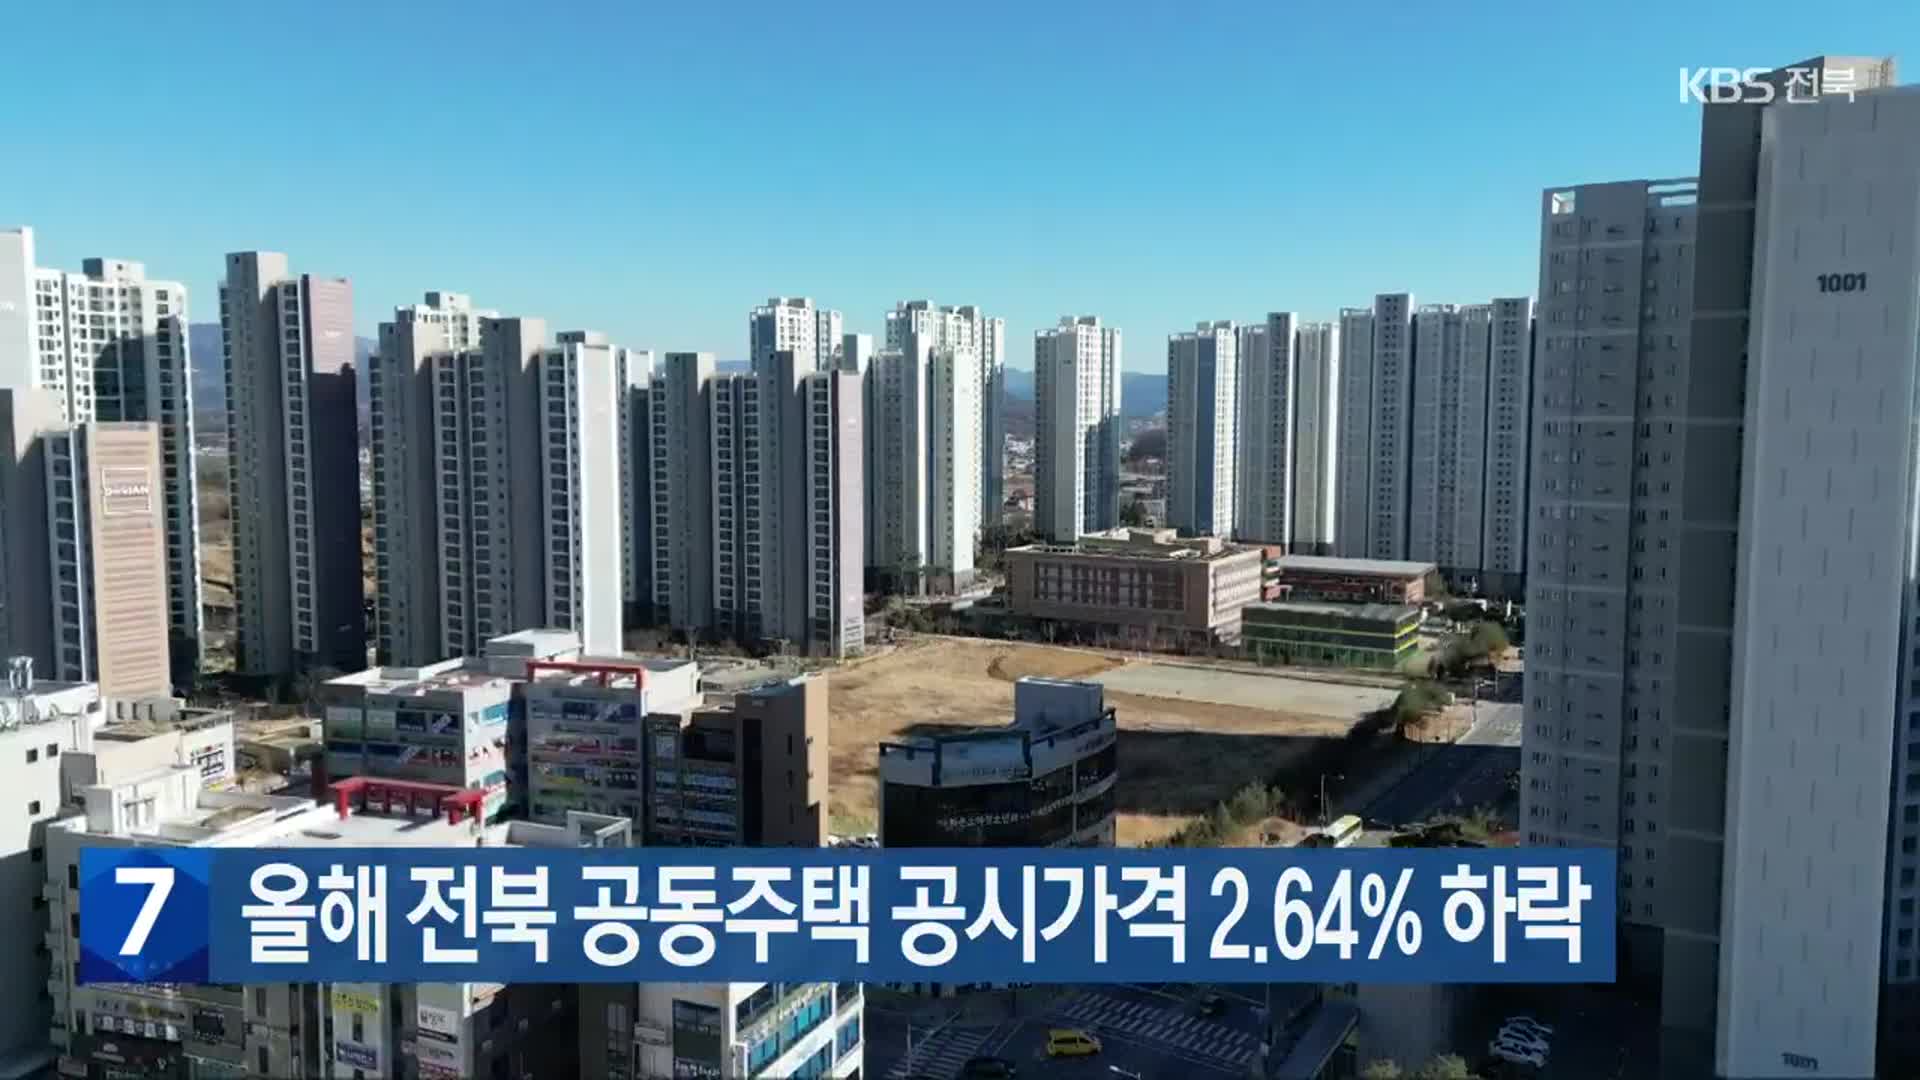 올해 전북 공동주택 공시가격 2.64% 하락